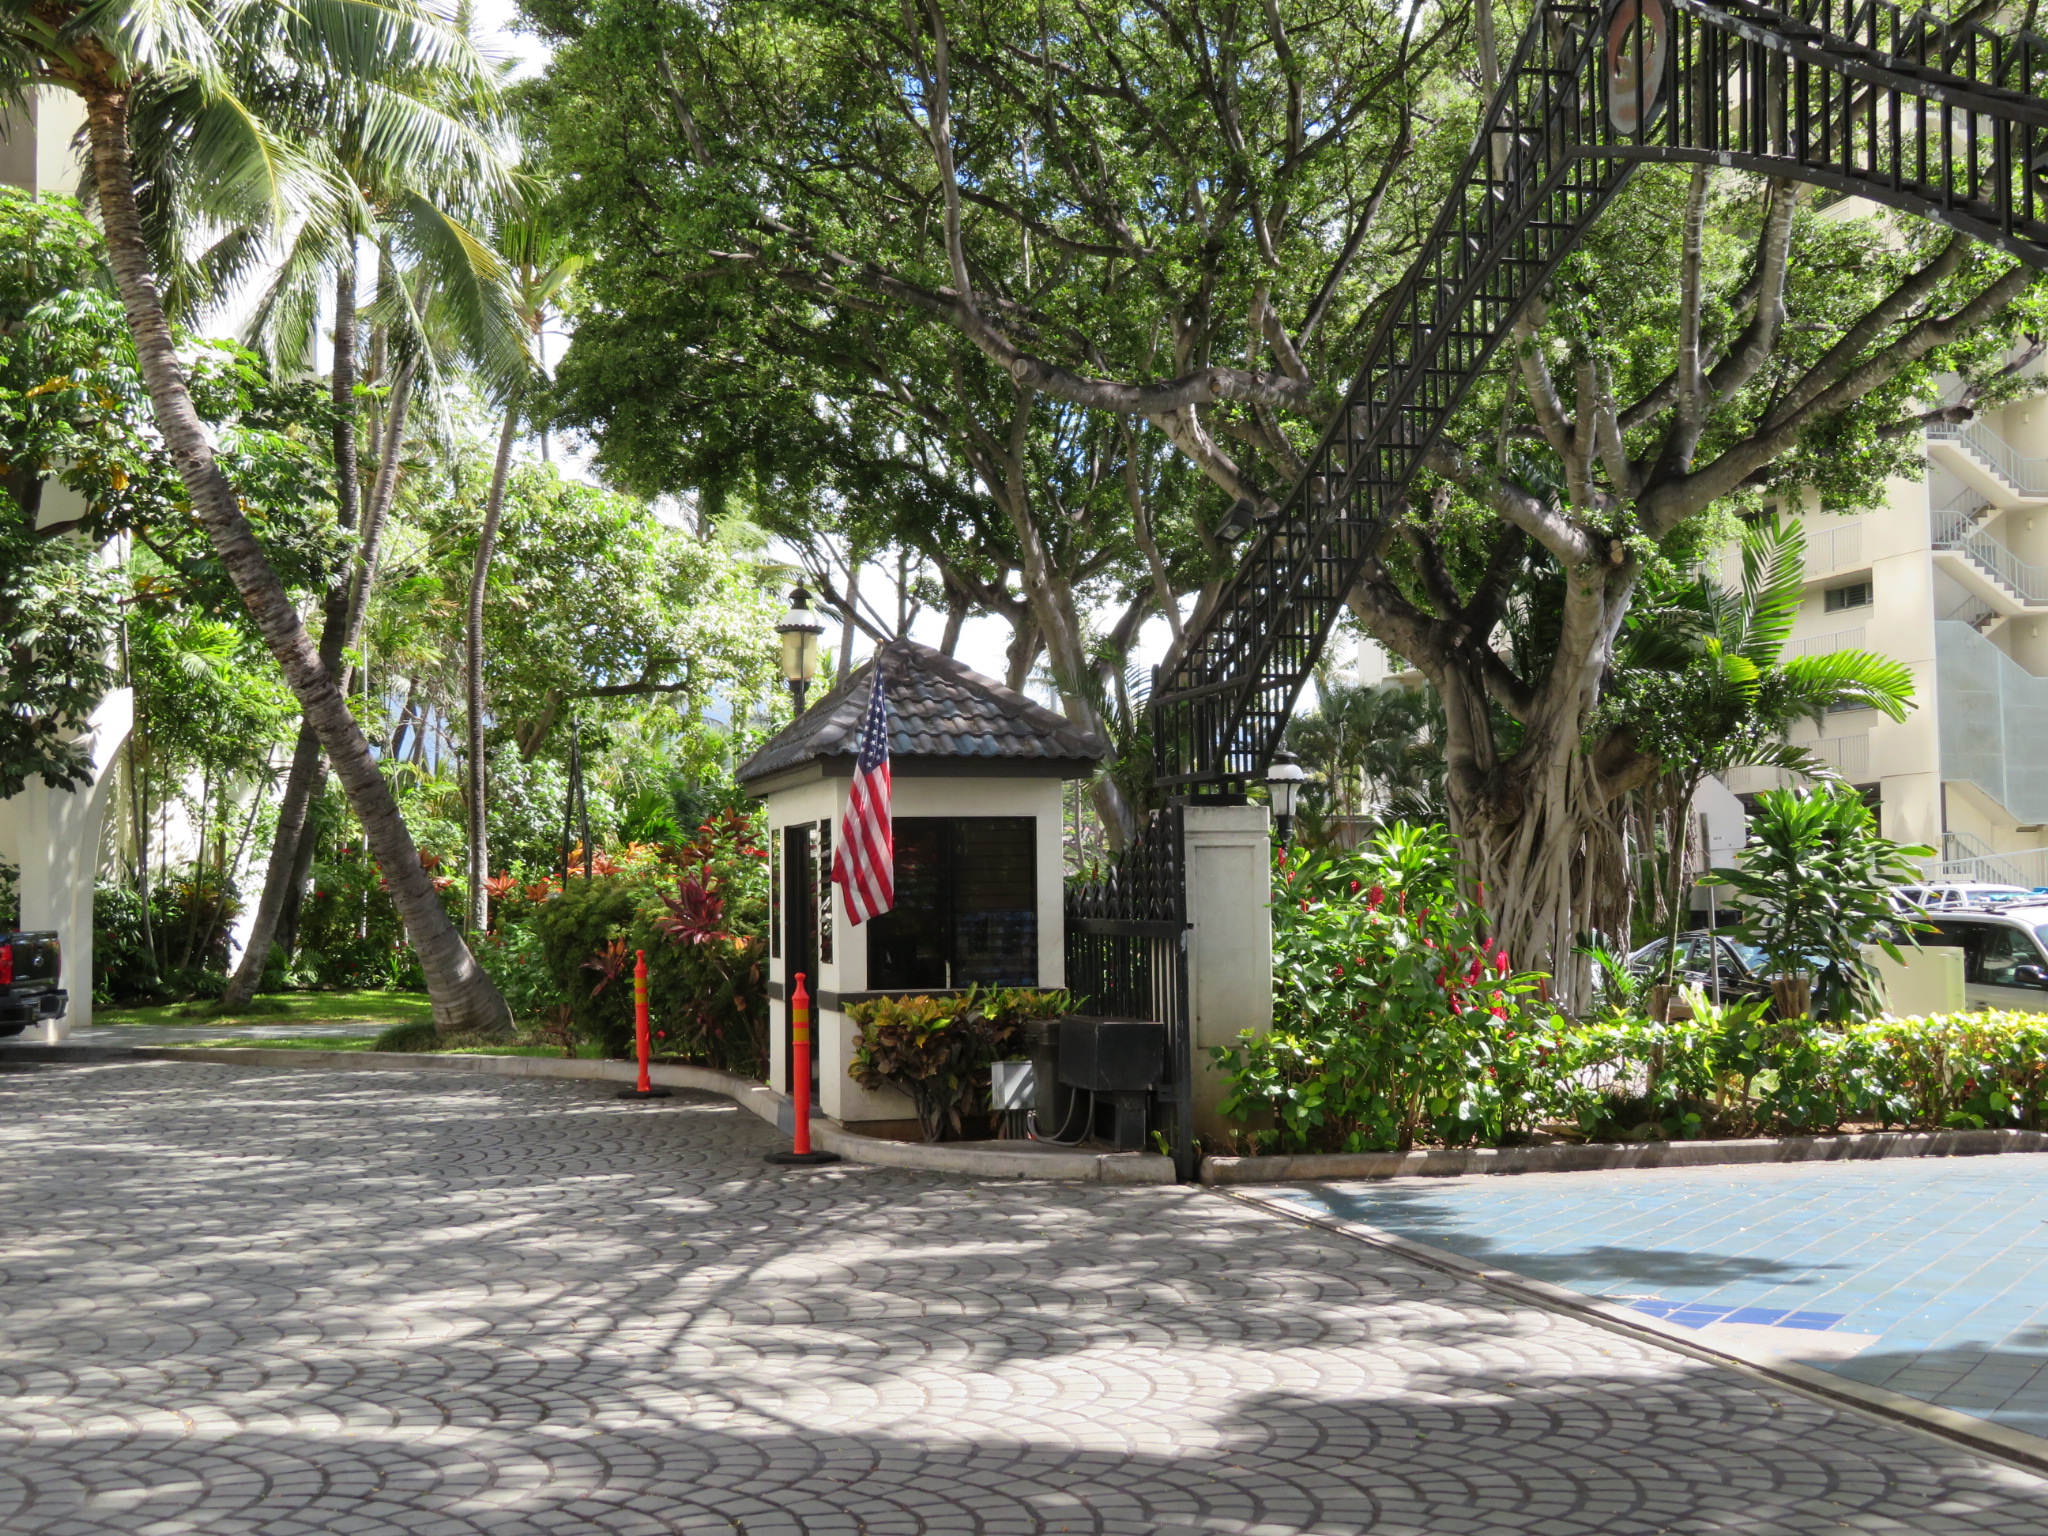 リリウオカラニ・ガーデン・アット・ワイキキ / Liliuokalani Gardens at Waikiki